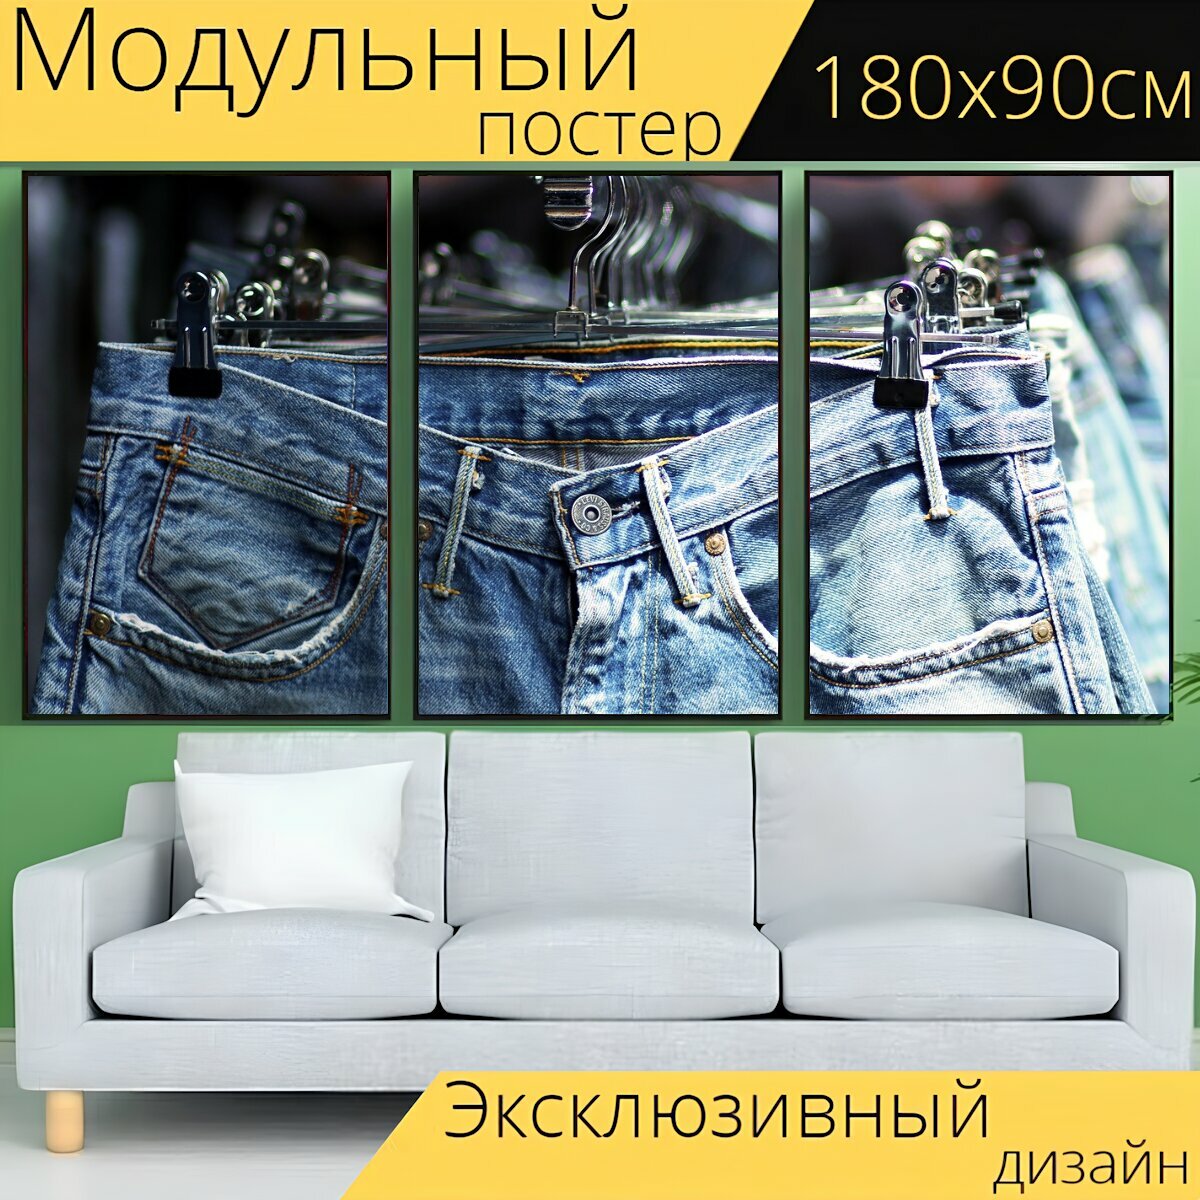 Модульный постер "Яффо, джинсы, базар" 180 x 90 см. для интерьера